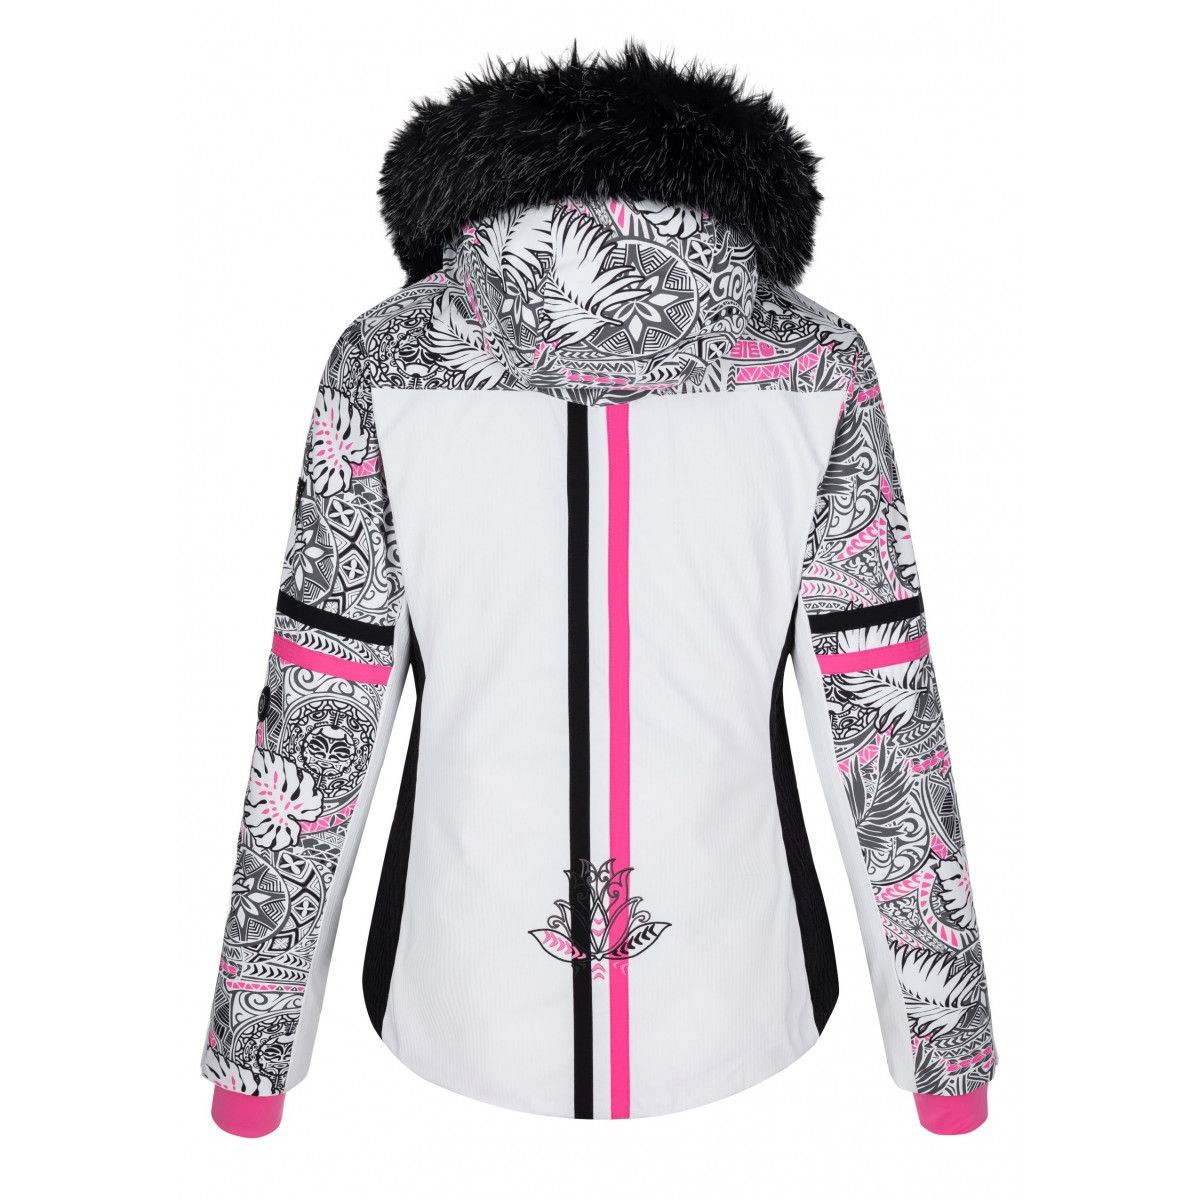 Lady`s Ski Jacket with heating system Lena-W Heat WHT KILPI - view 12